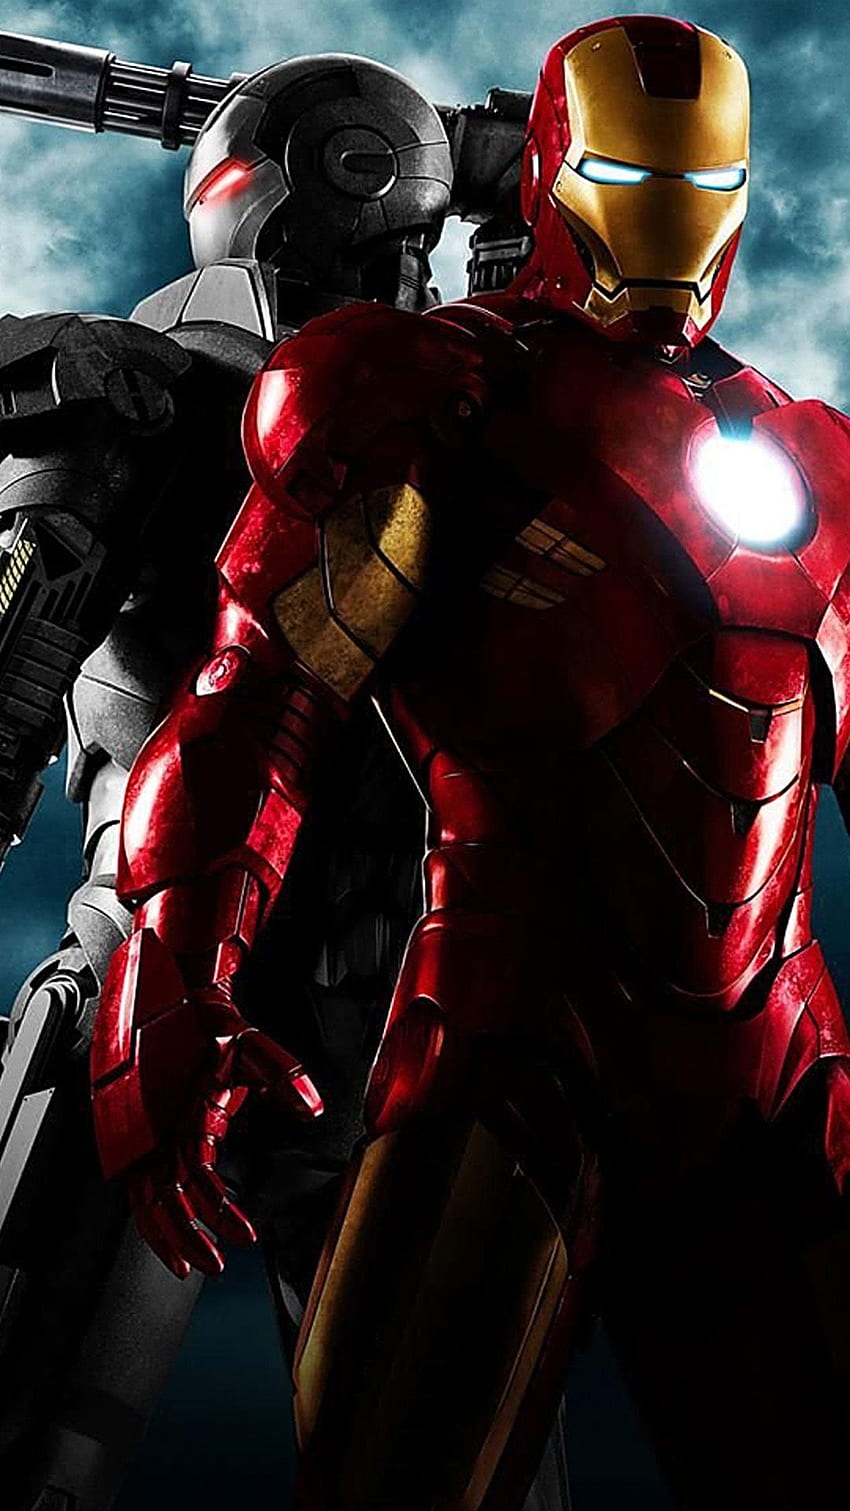 Bạn đang tìm kiếm những hình nền độ phân giải cao với chủ đề Iron Man? Hình nền Iron Man 4k sẽ là sự lựa chọn hoàn hảo cho bạn. Điều đặc biệt là bạn có thể sử dụng chúng để trang trí màn hình máy tính hoặc thiết bị di động của mình. Hãy tận hưởng chất lượng và độ sắc nét của từng chi tiết trên hình ảnh.